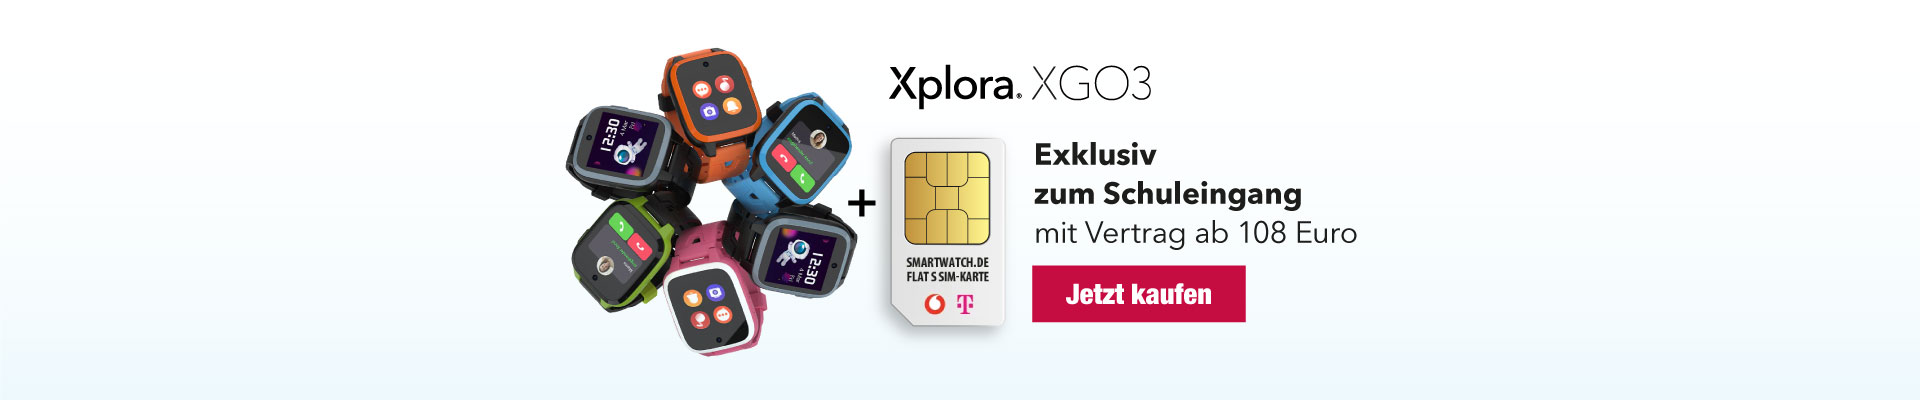 Xplora XGO3 mit Vertrag ab 108 Euro kaufen